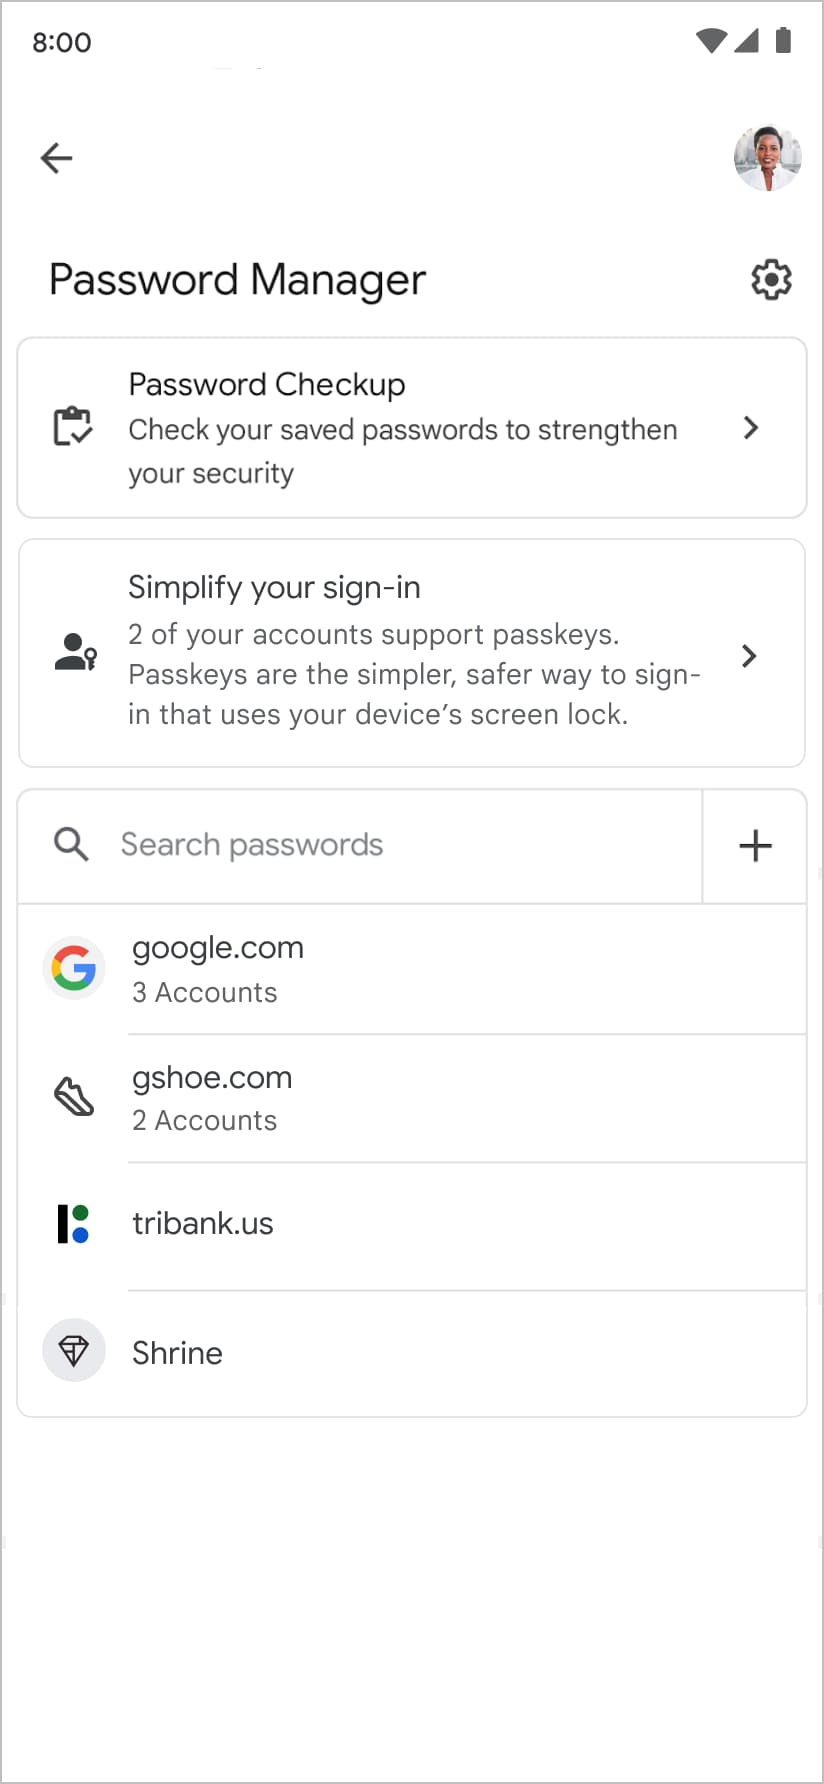 Der Google Passwortmanager schlägt dem Nutzer vor, einen Passkey zu erstellen, wenn er seine Liste mit vorhandenen Passwörtern und Passkeys überprüft.